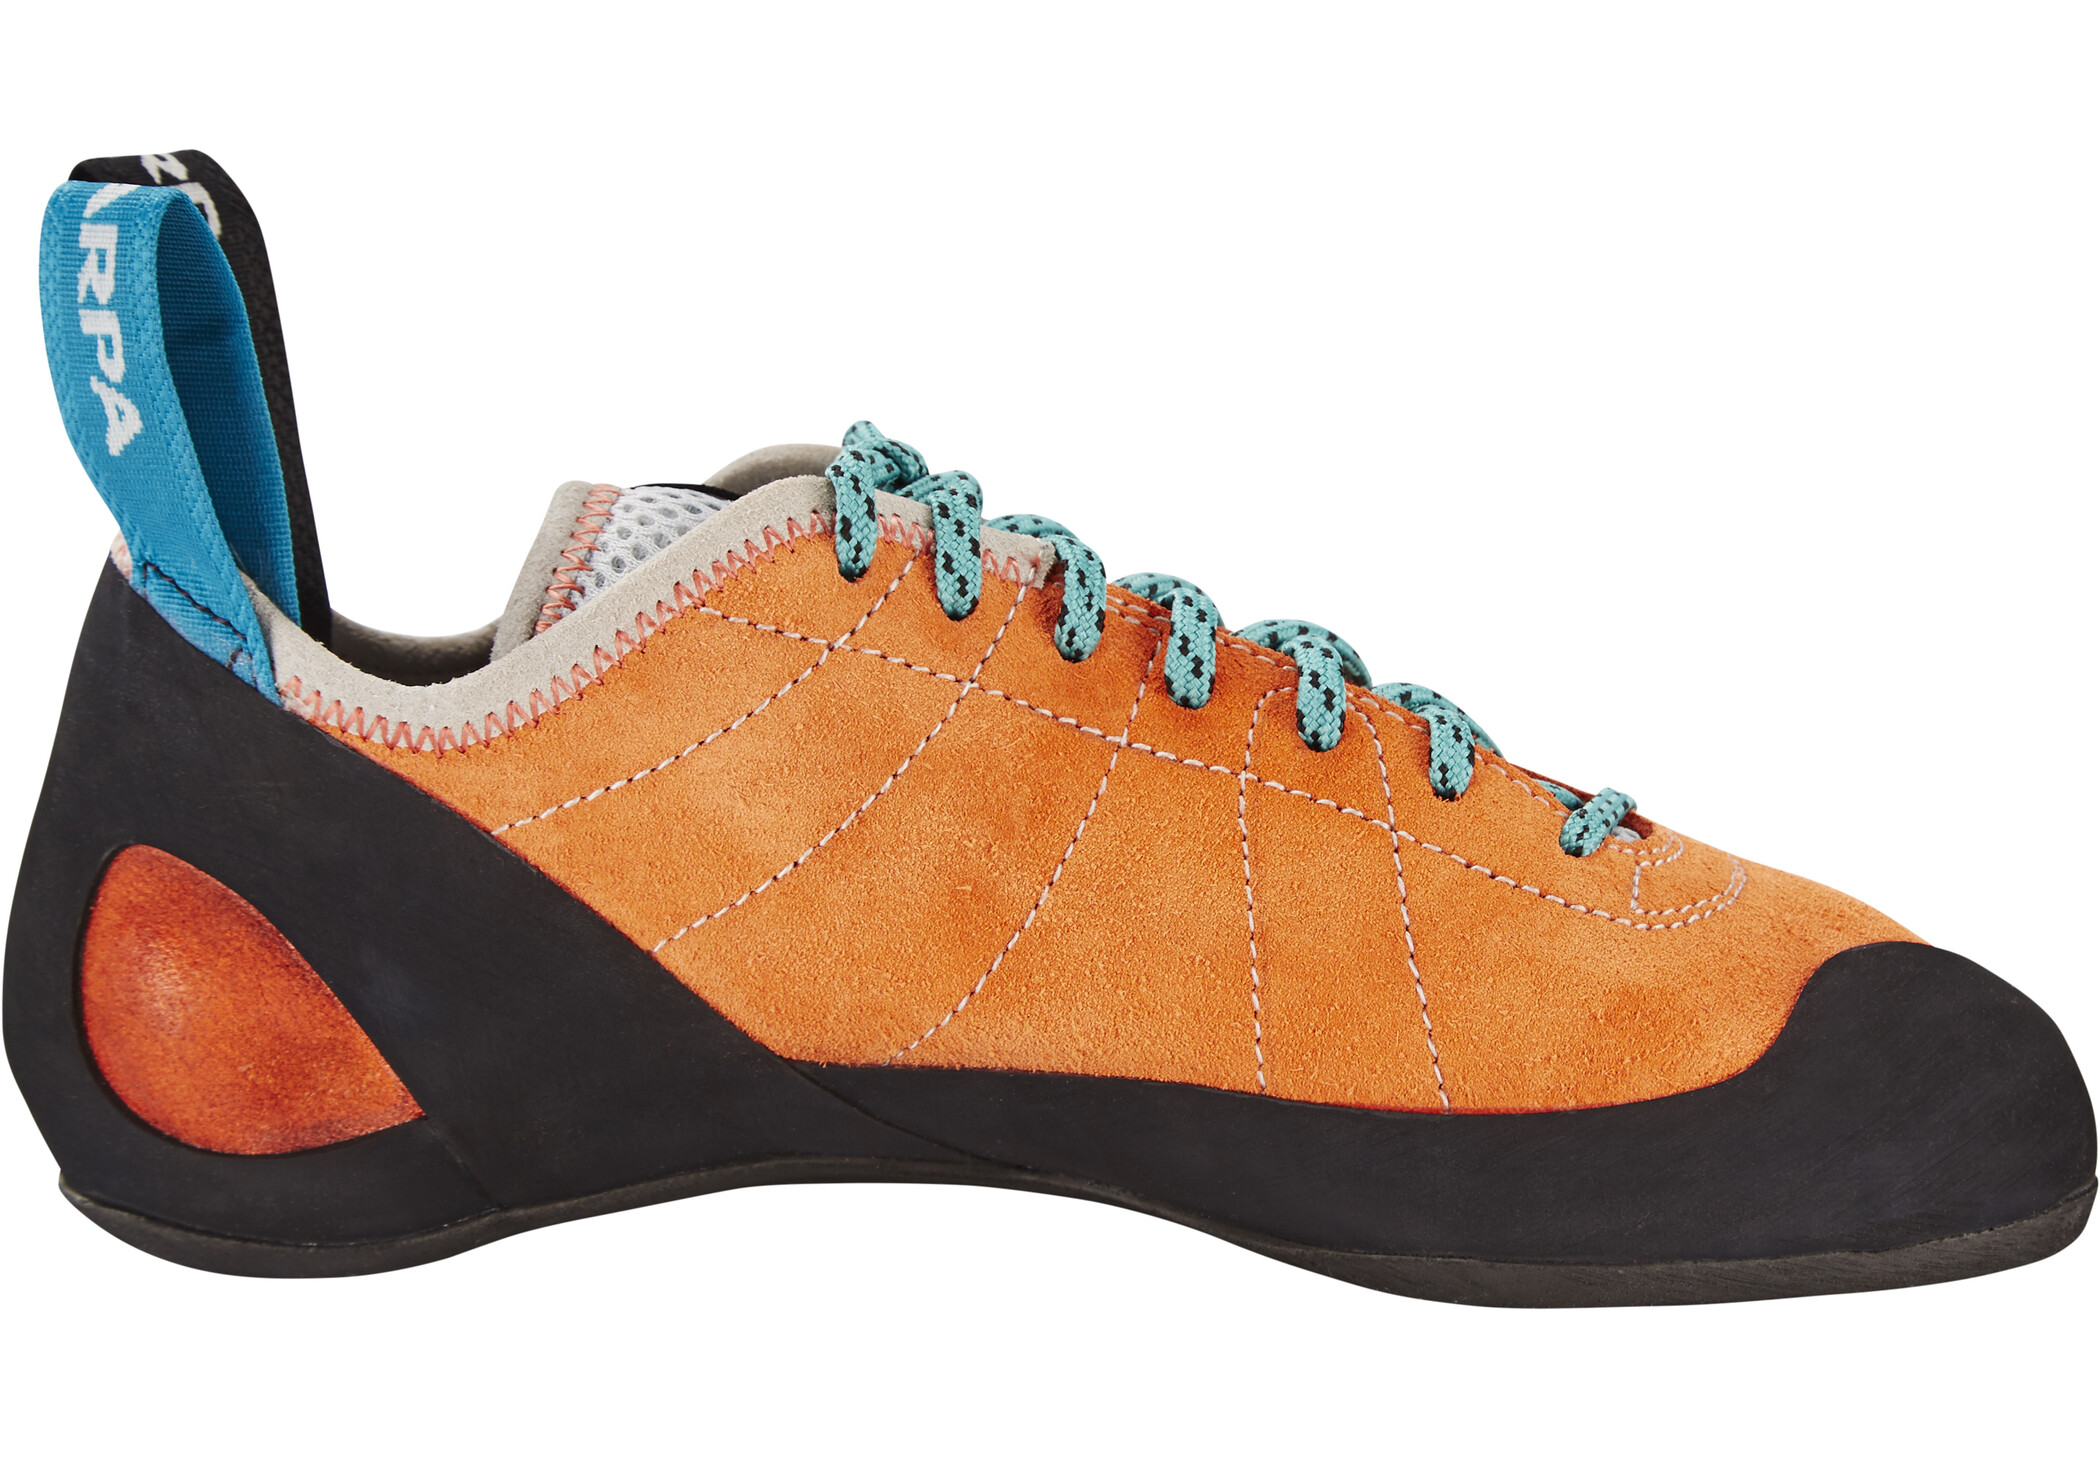 Scarpa Helix Scarpe da arrampicata Donna, arancione